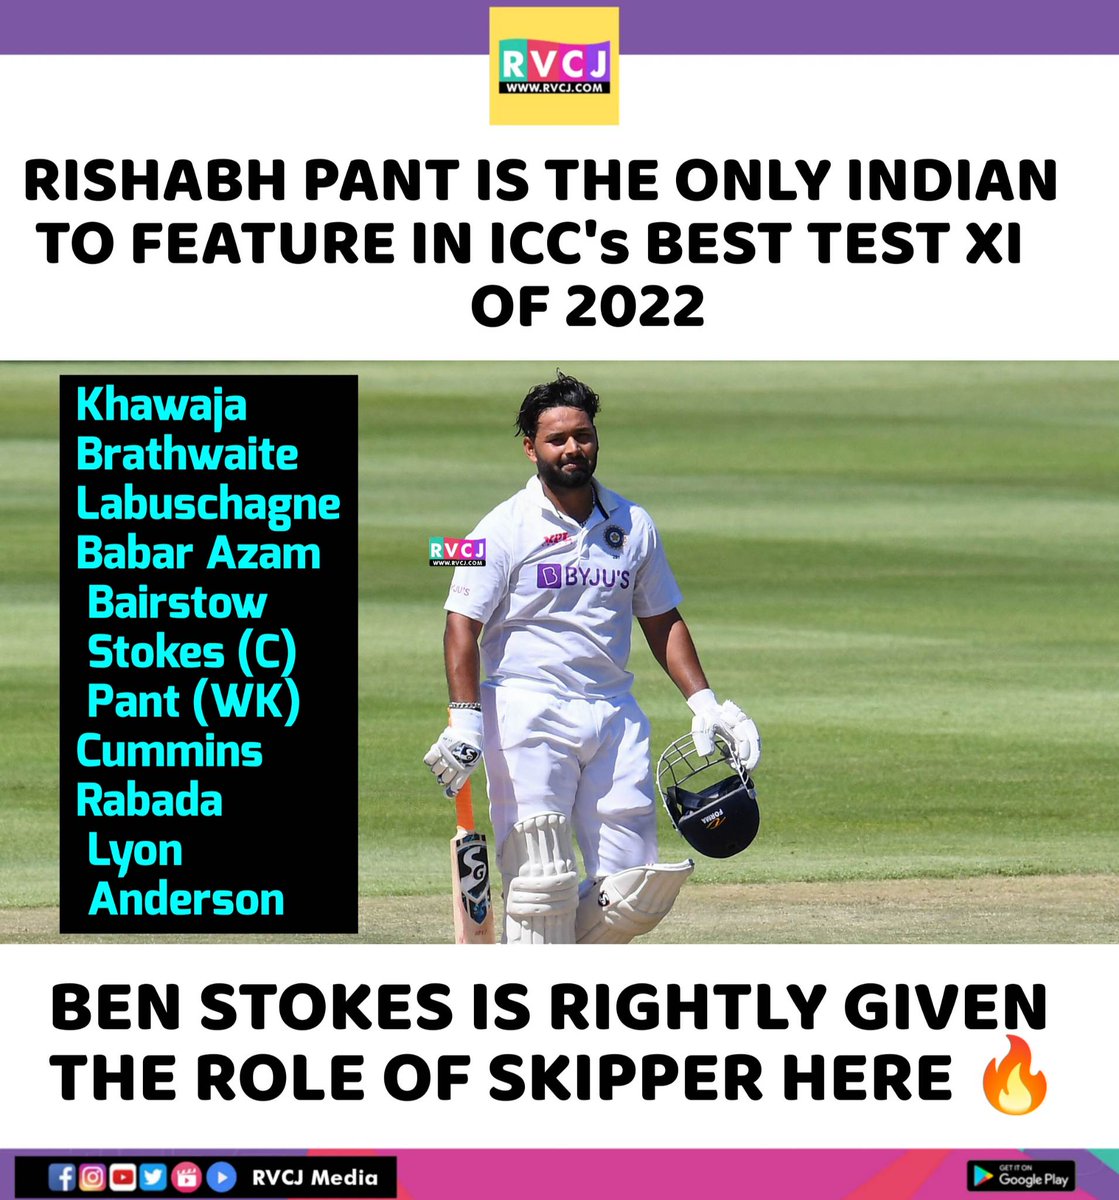 ICC's Best Test XI of 2022